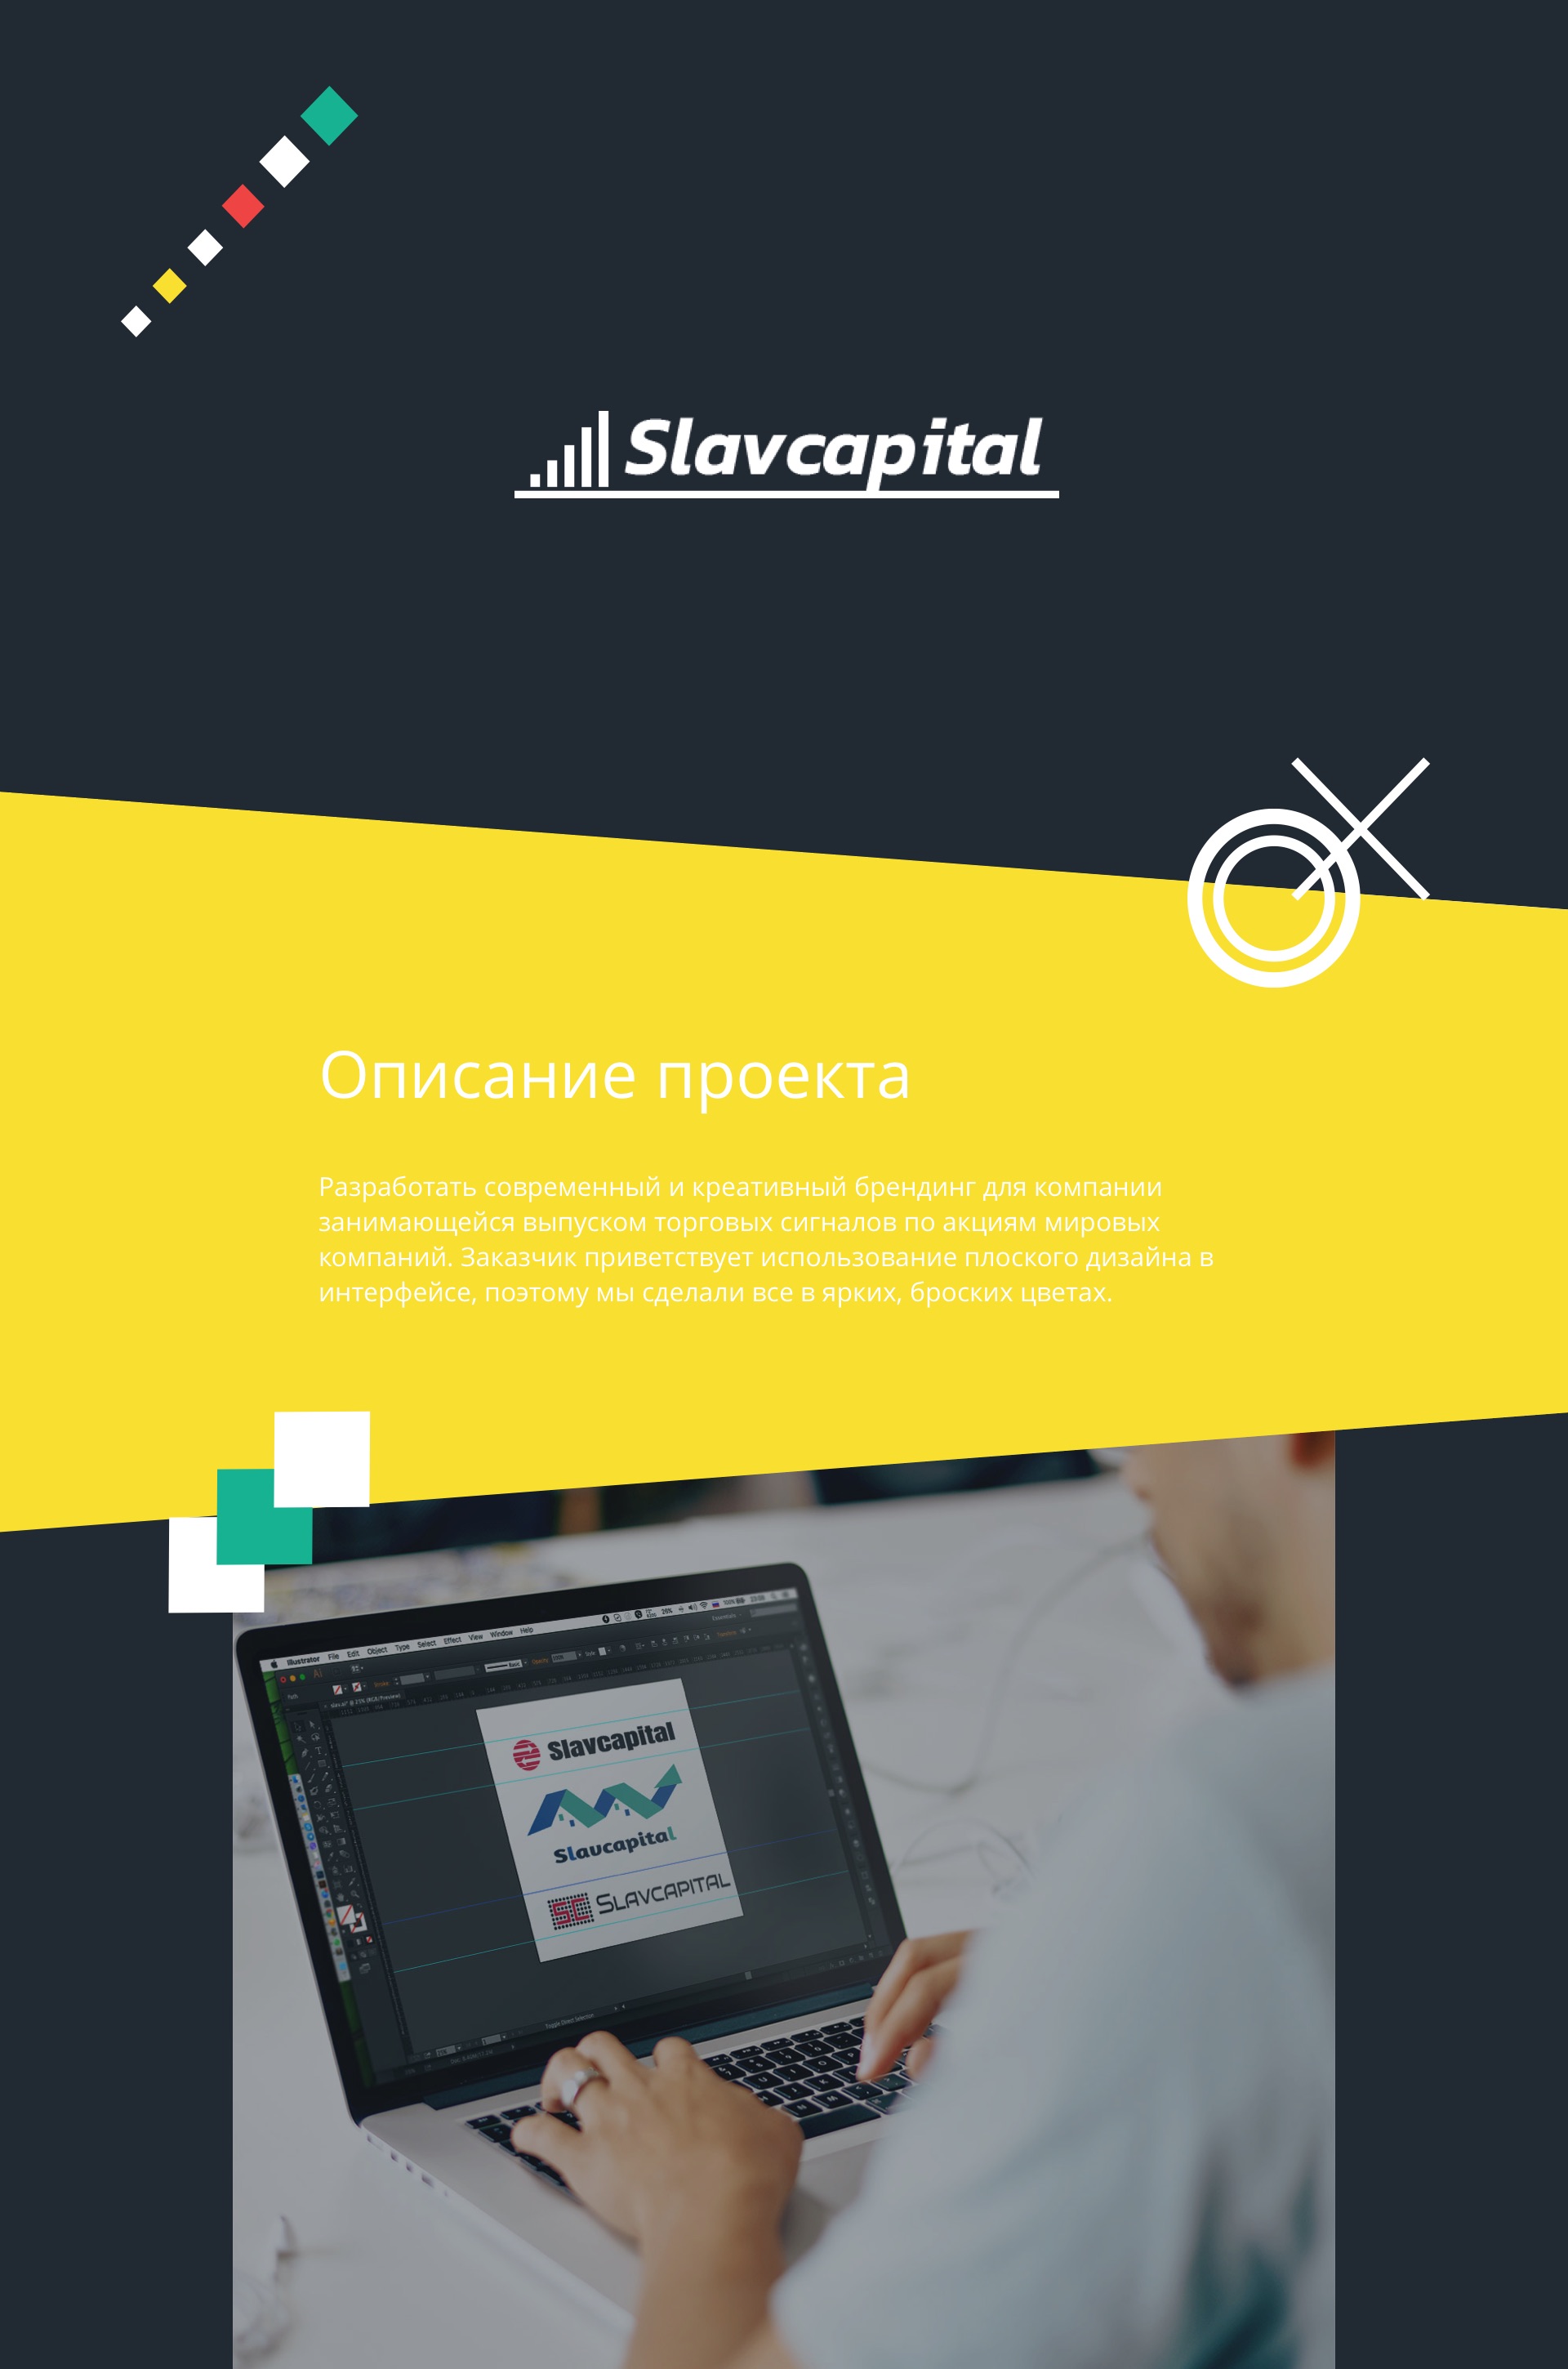 Slavcapital branding part 1